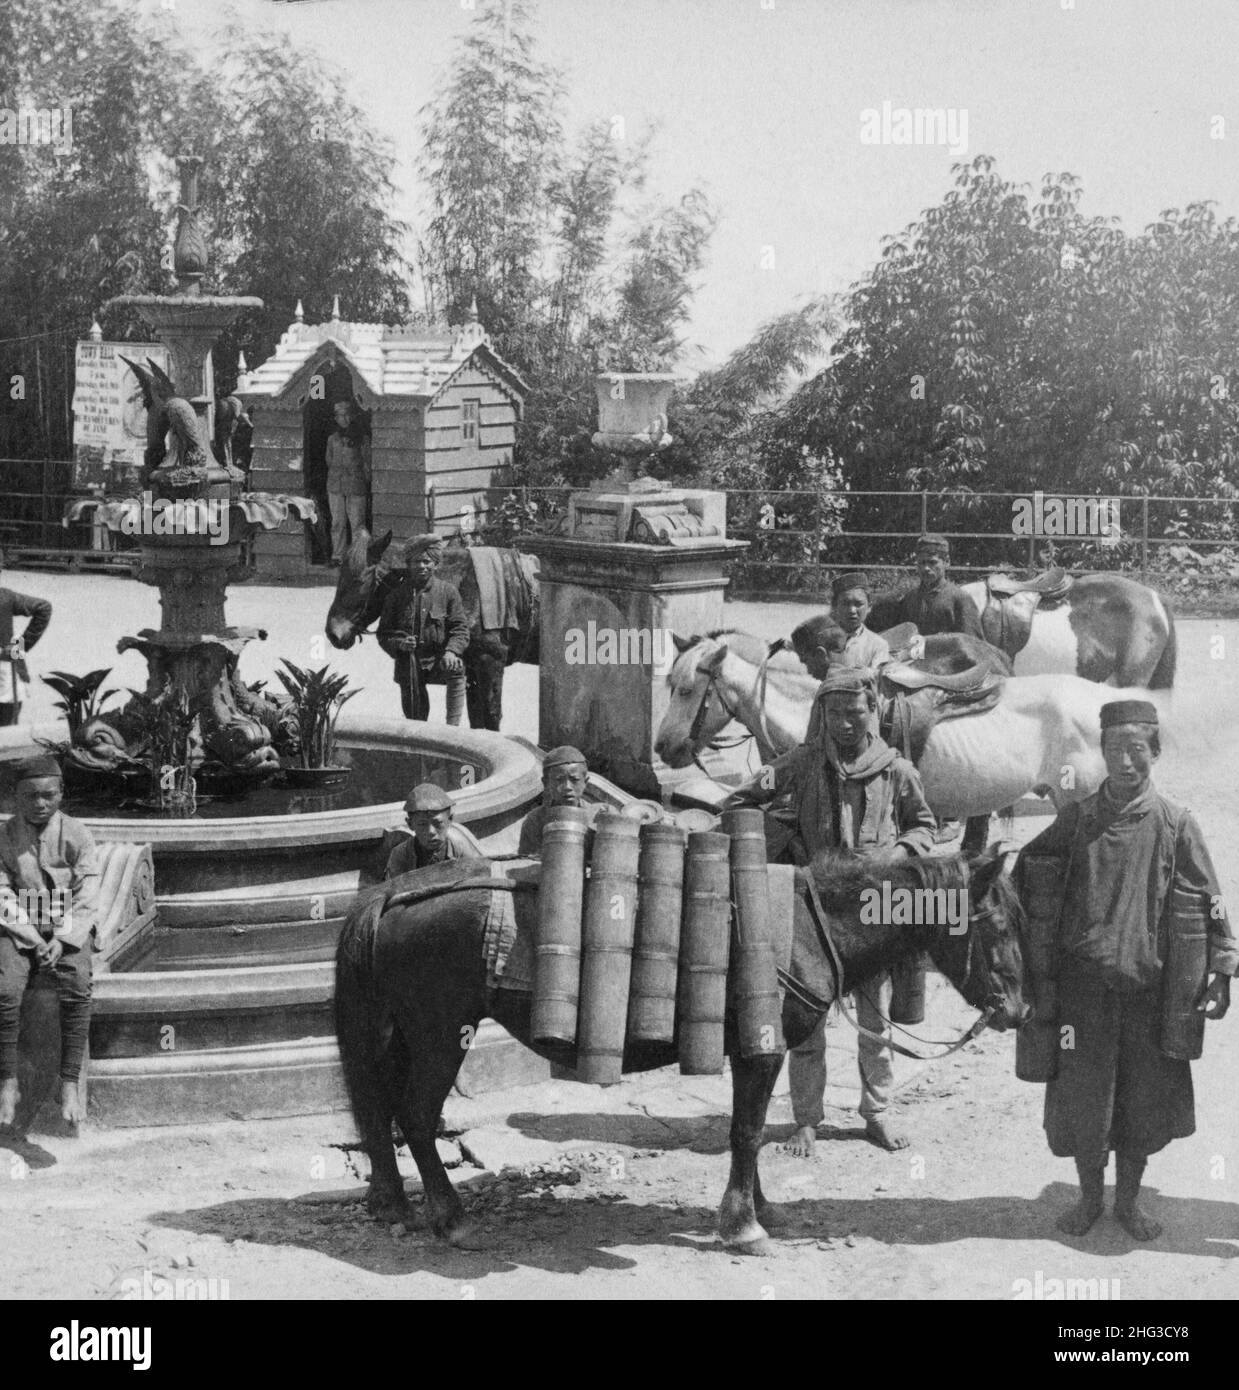 Foto d'epoca del milkman bhutanese con curiosi vasi di bambù, presso la fontana pubblica, Darjeeling, India. 1903 Foto Stock